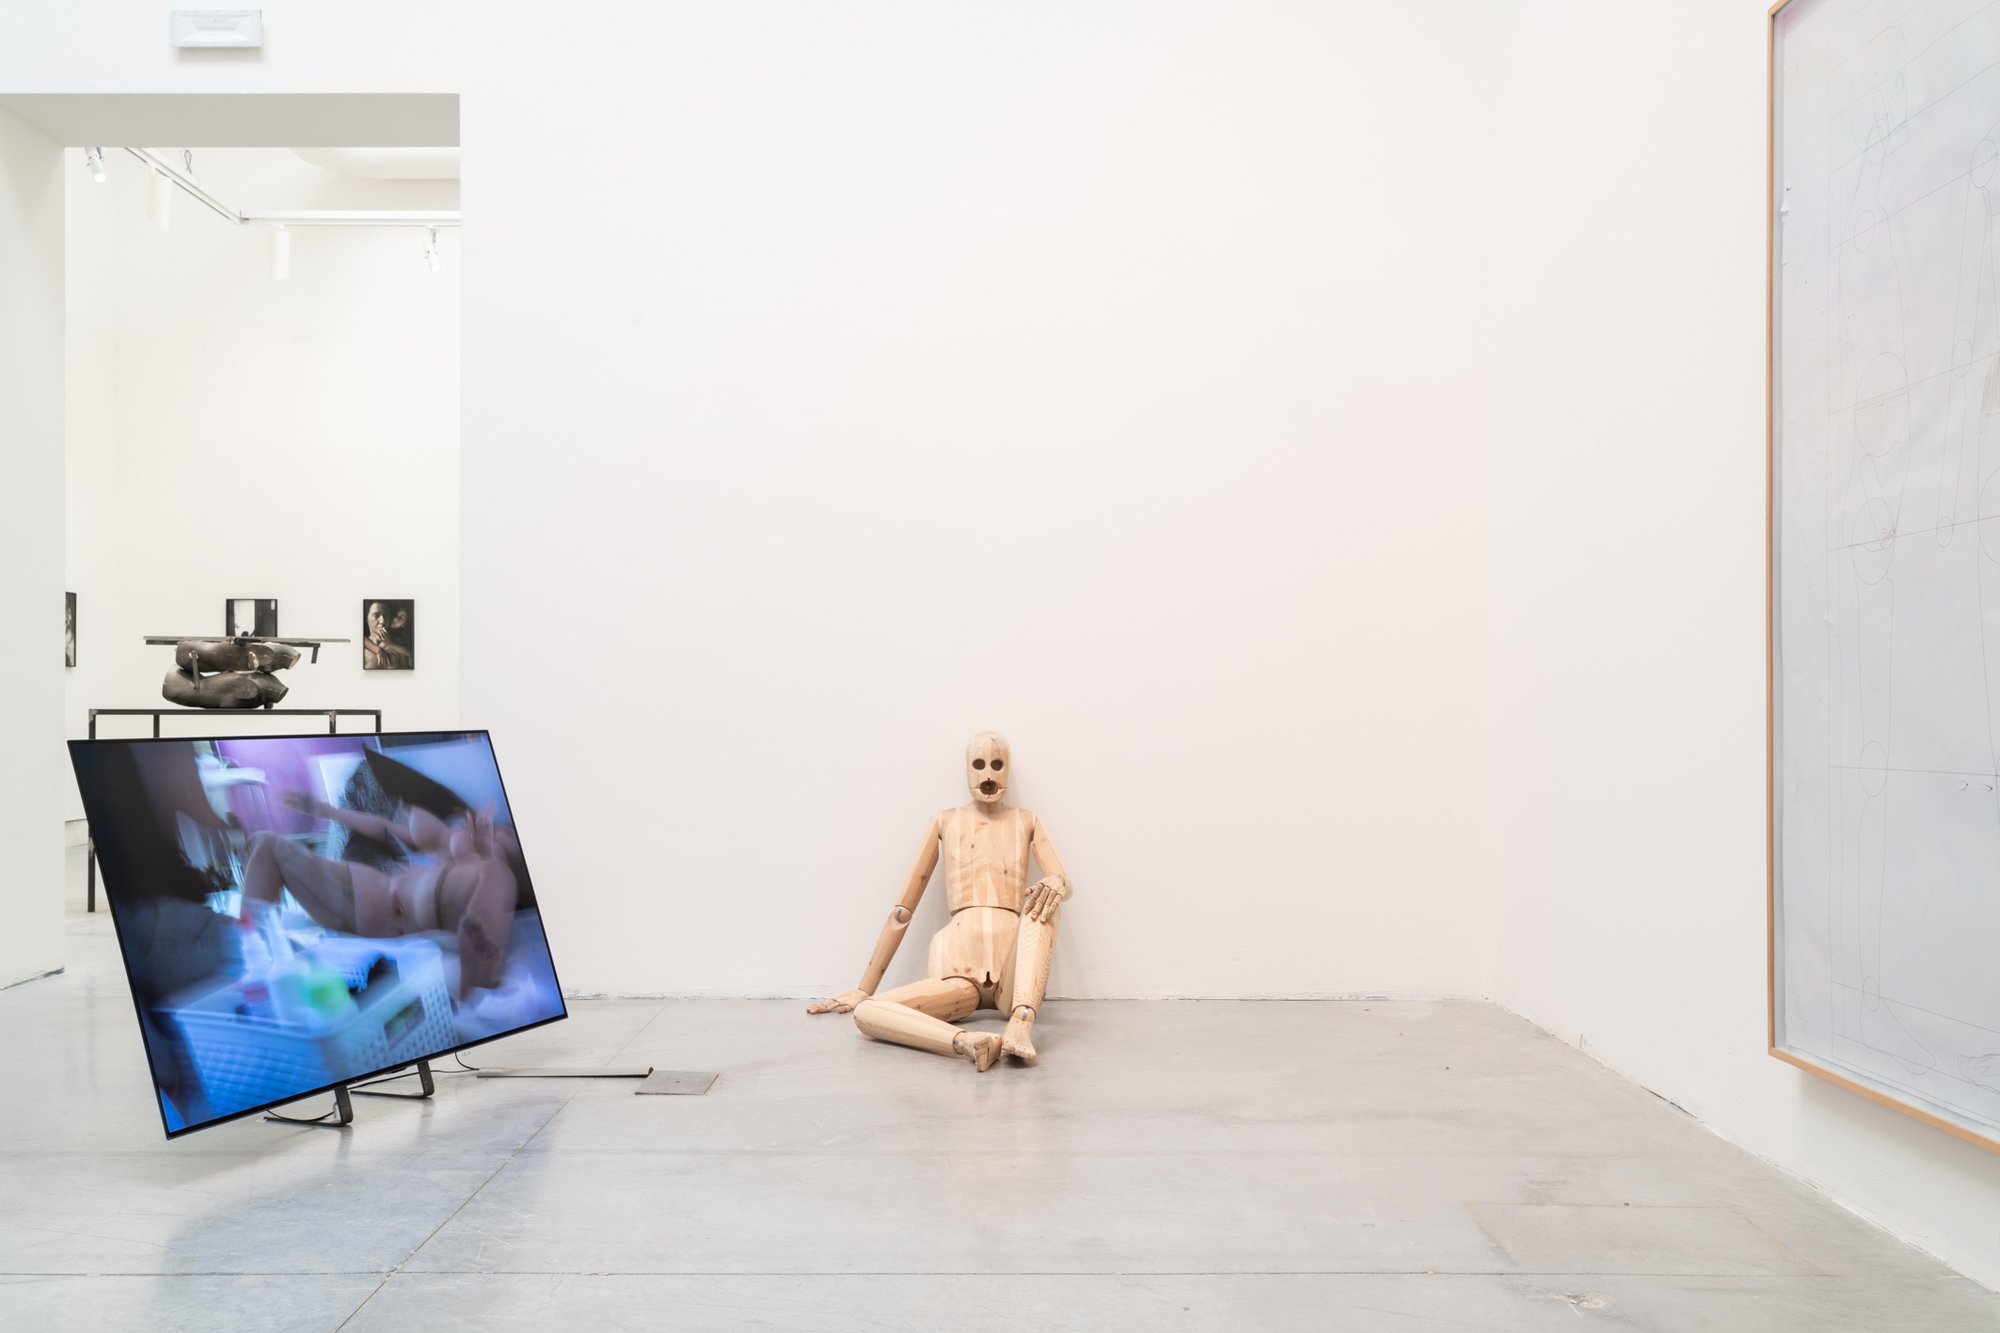 Installation view, The Milk of Dreams, 59th International Art Exhibition – La Biennale di Venezia, Venice, 2022.